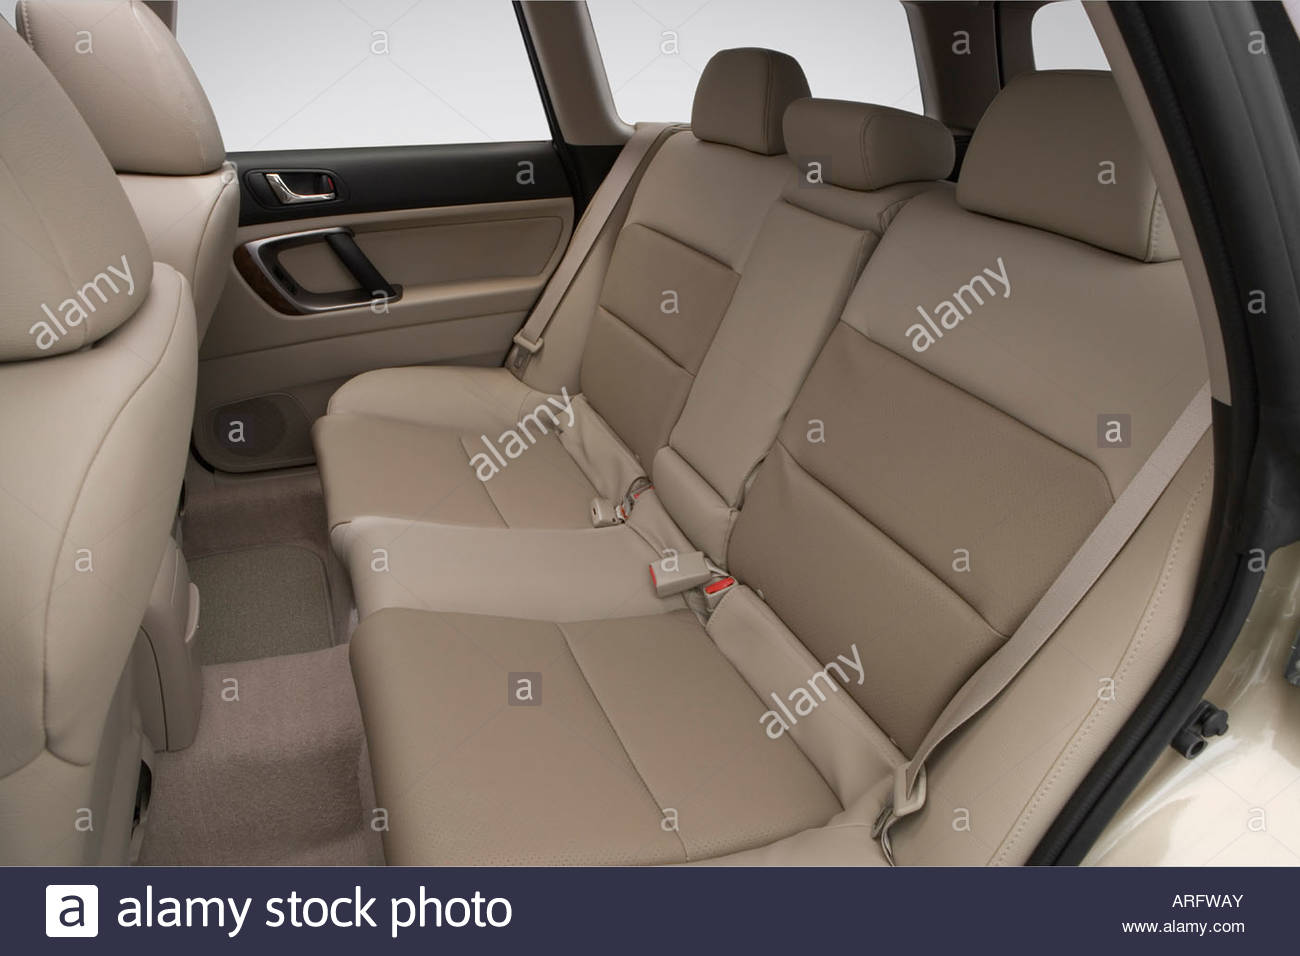 2008-subaru-outback-25i-limited-llbean-in-gold-rear-seats-ARFWAY.jpg